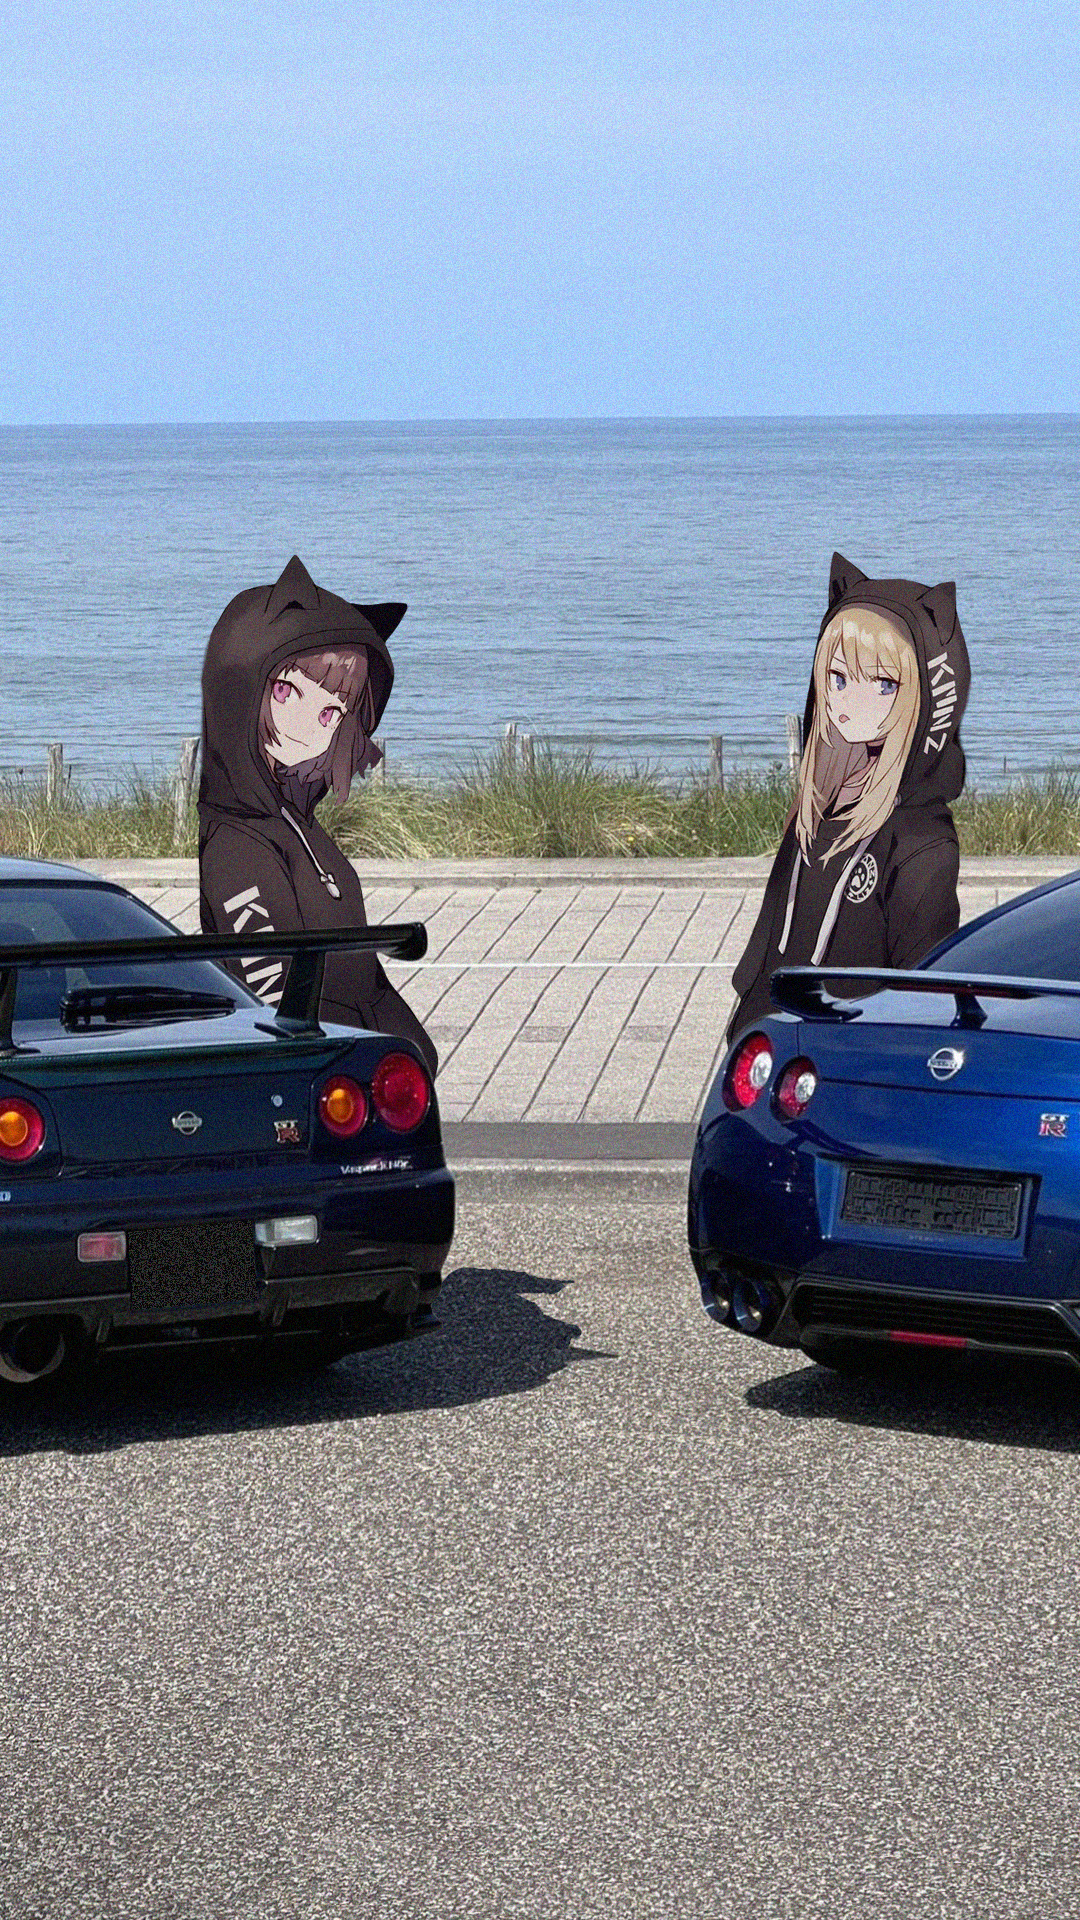 Anime 1080x1920 anime girls Nissan Skyline R34 Nissan GT-R jdmxanime Japanese cars car animeirl